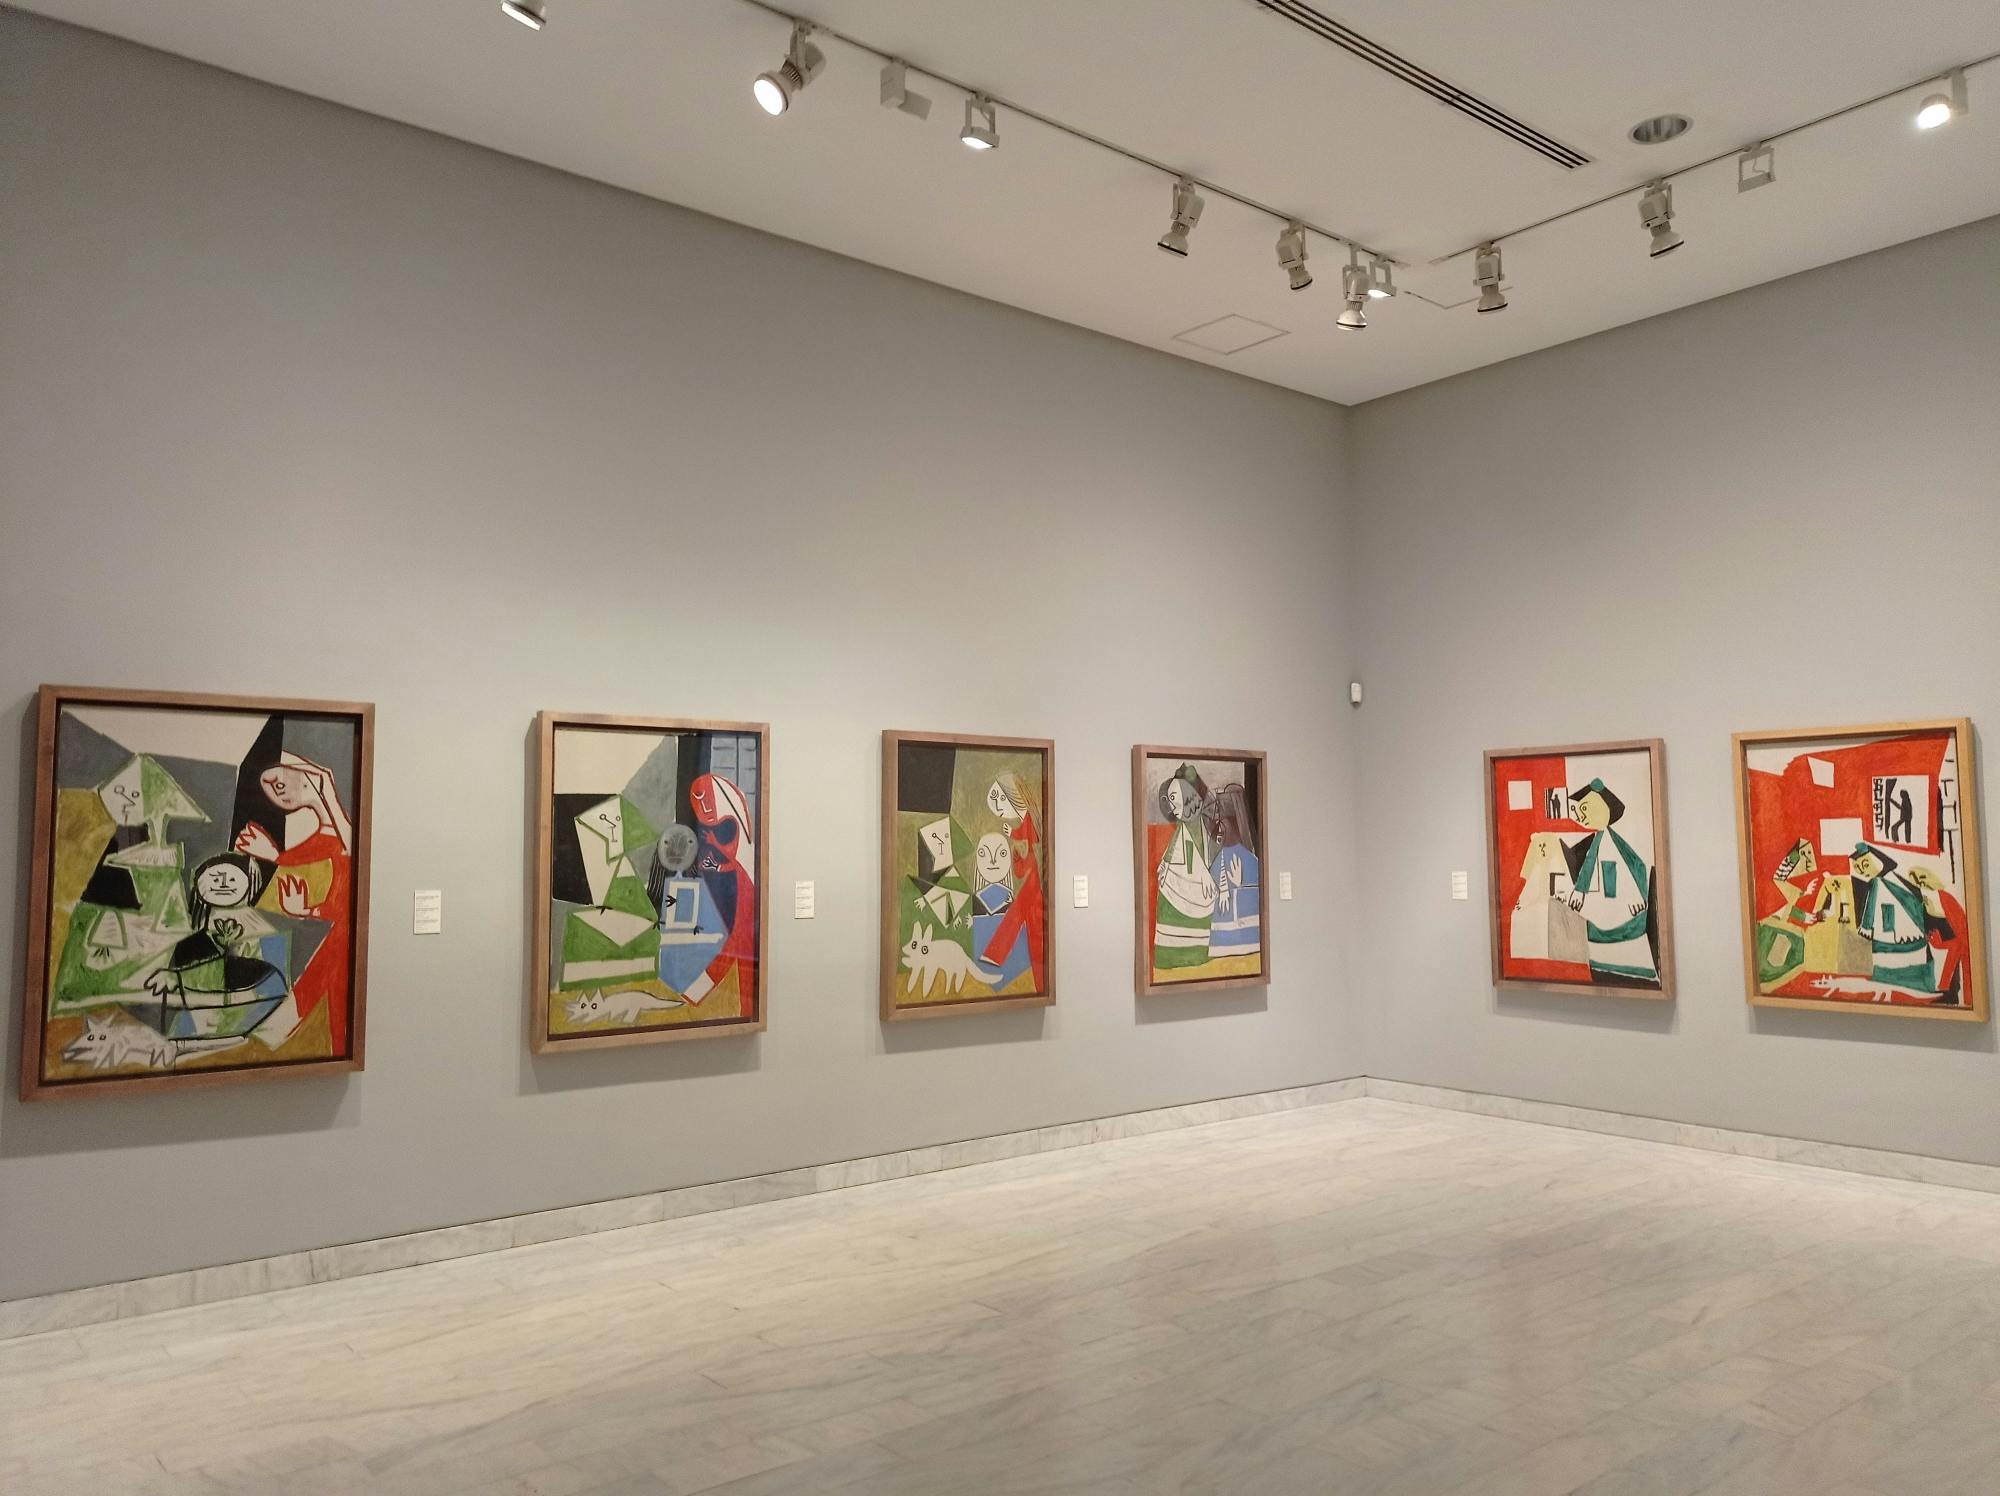 Visita guiada pelo Museu Picasso de Barcelona com entradas sem fila